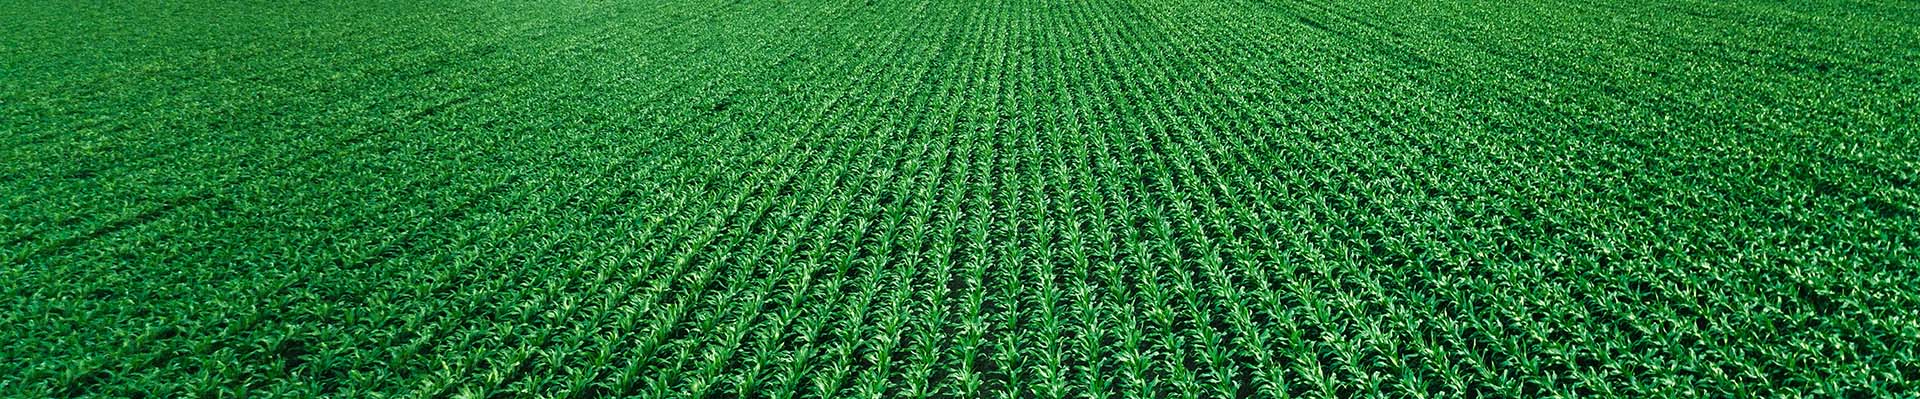 Ein grünes Maisfeld